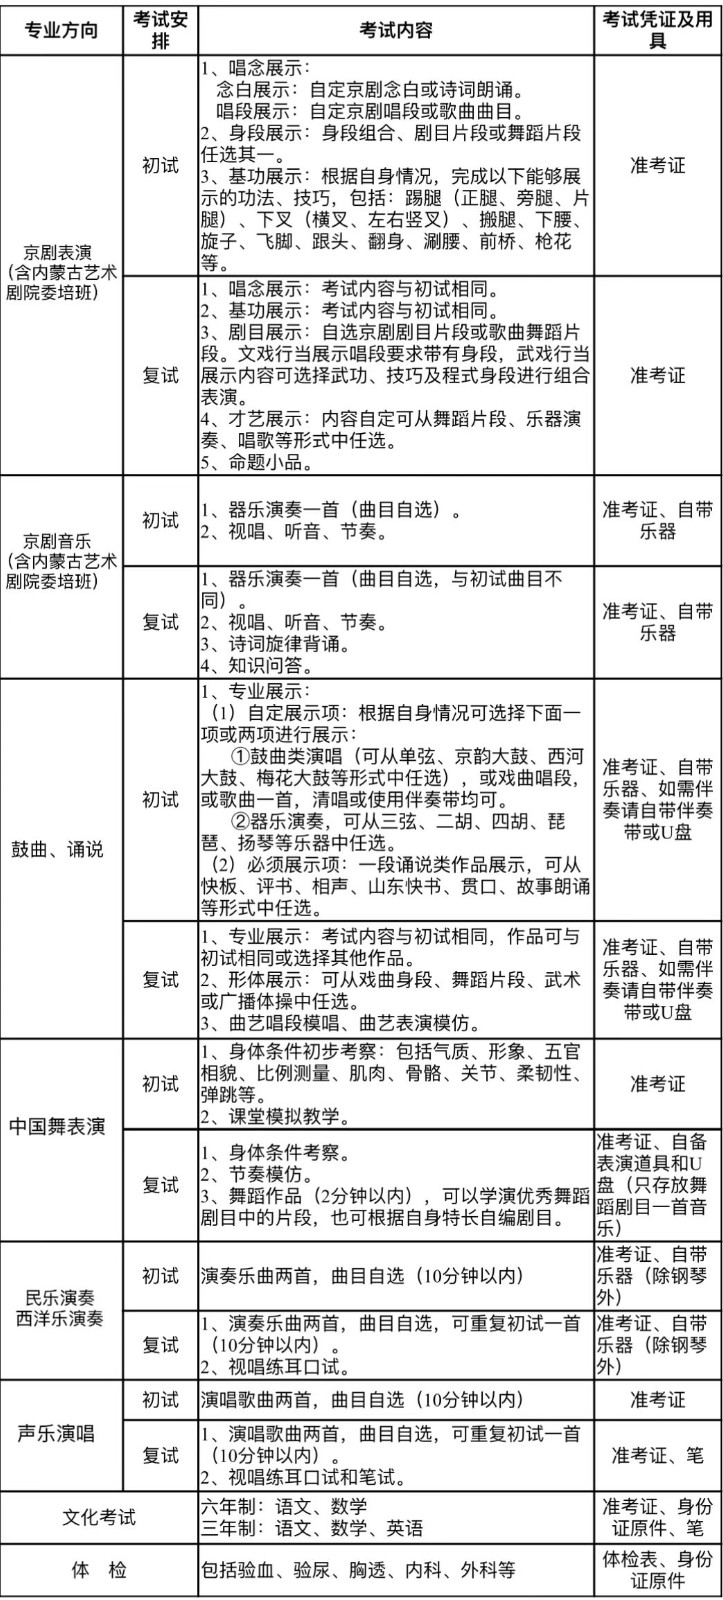 2023年北京戲曲藝術職業學院中專招生簡章、招生計劃、報名條件、考試內容和要求